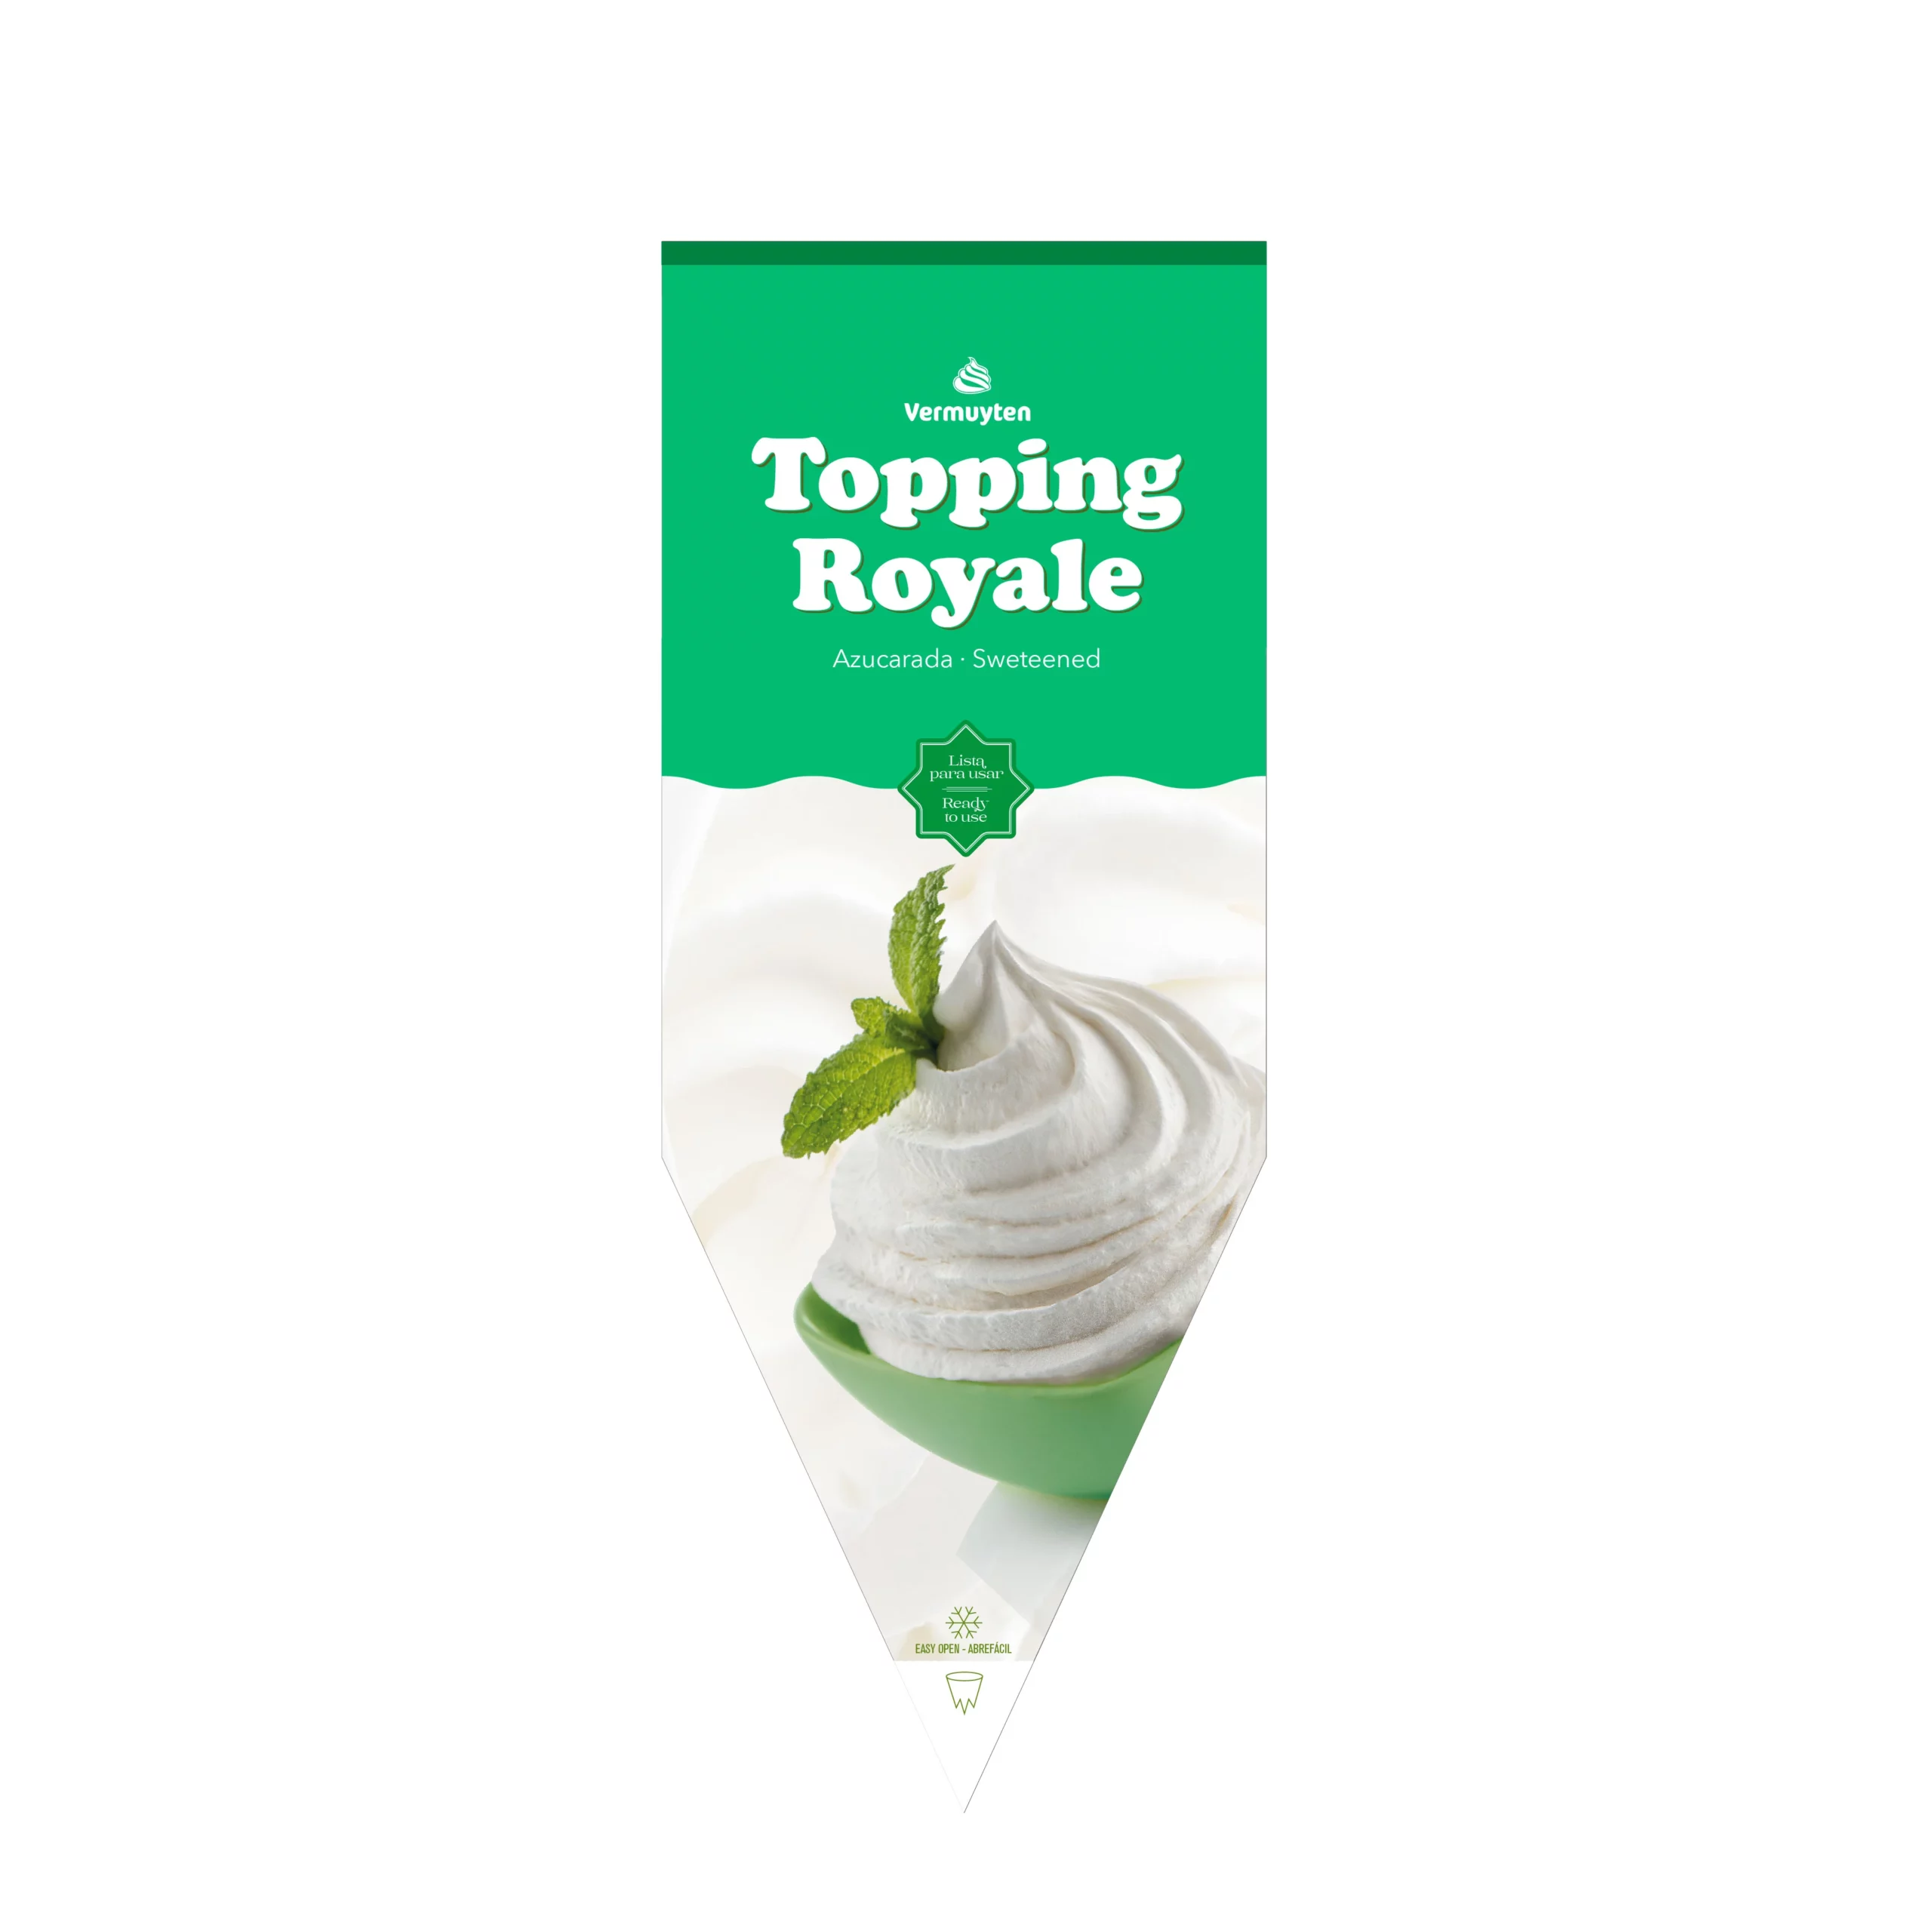 Imagen del envase del producto congelado Topping Royale manga de nata azucarada.